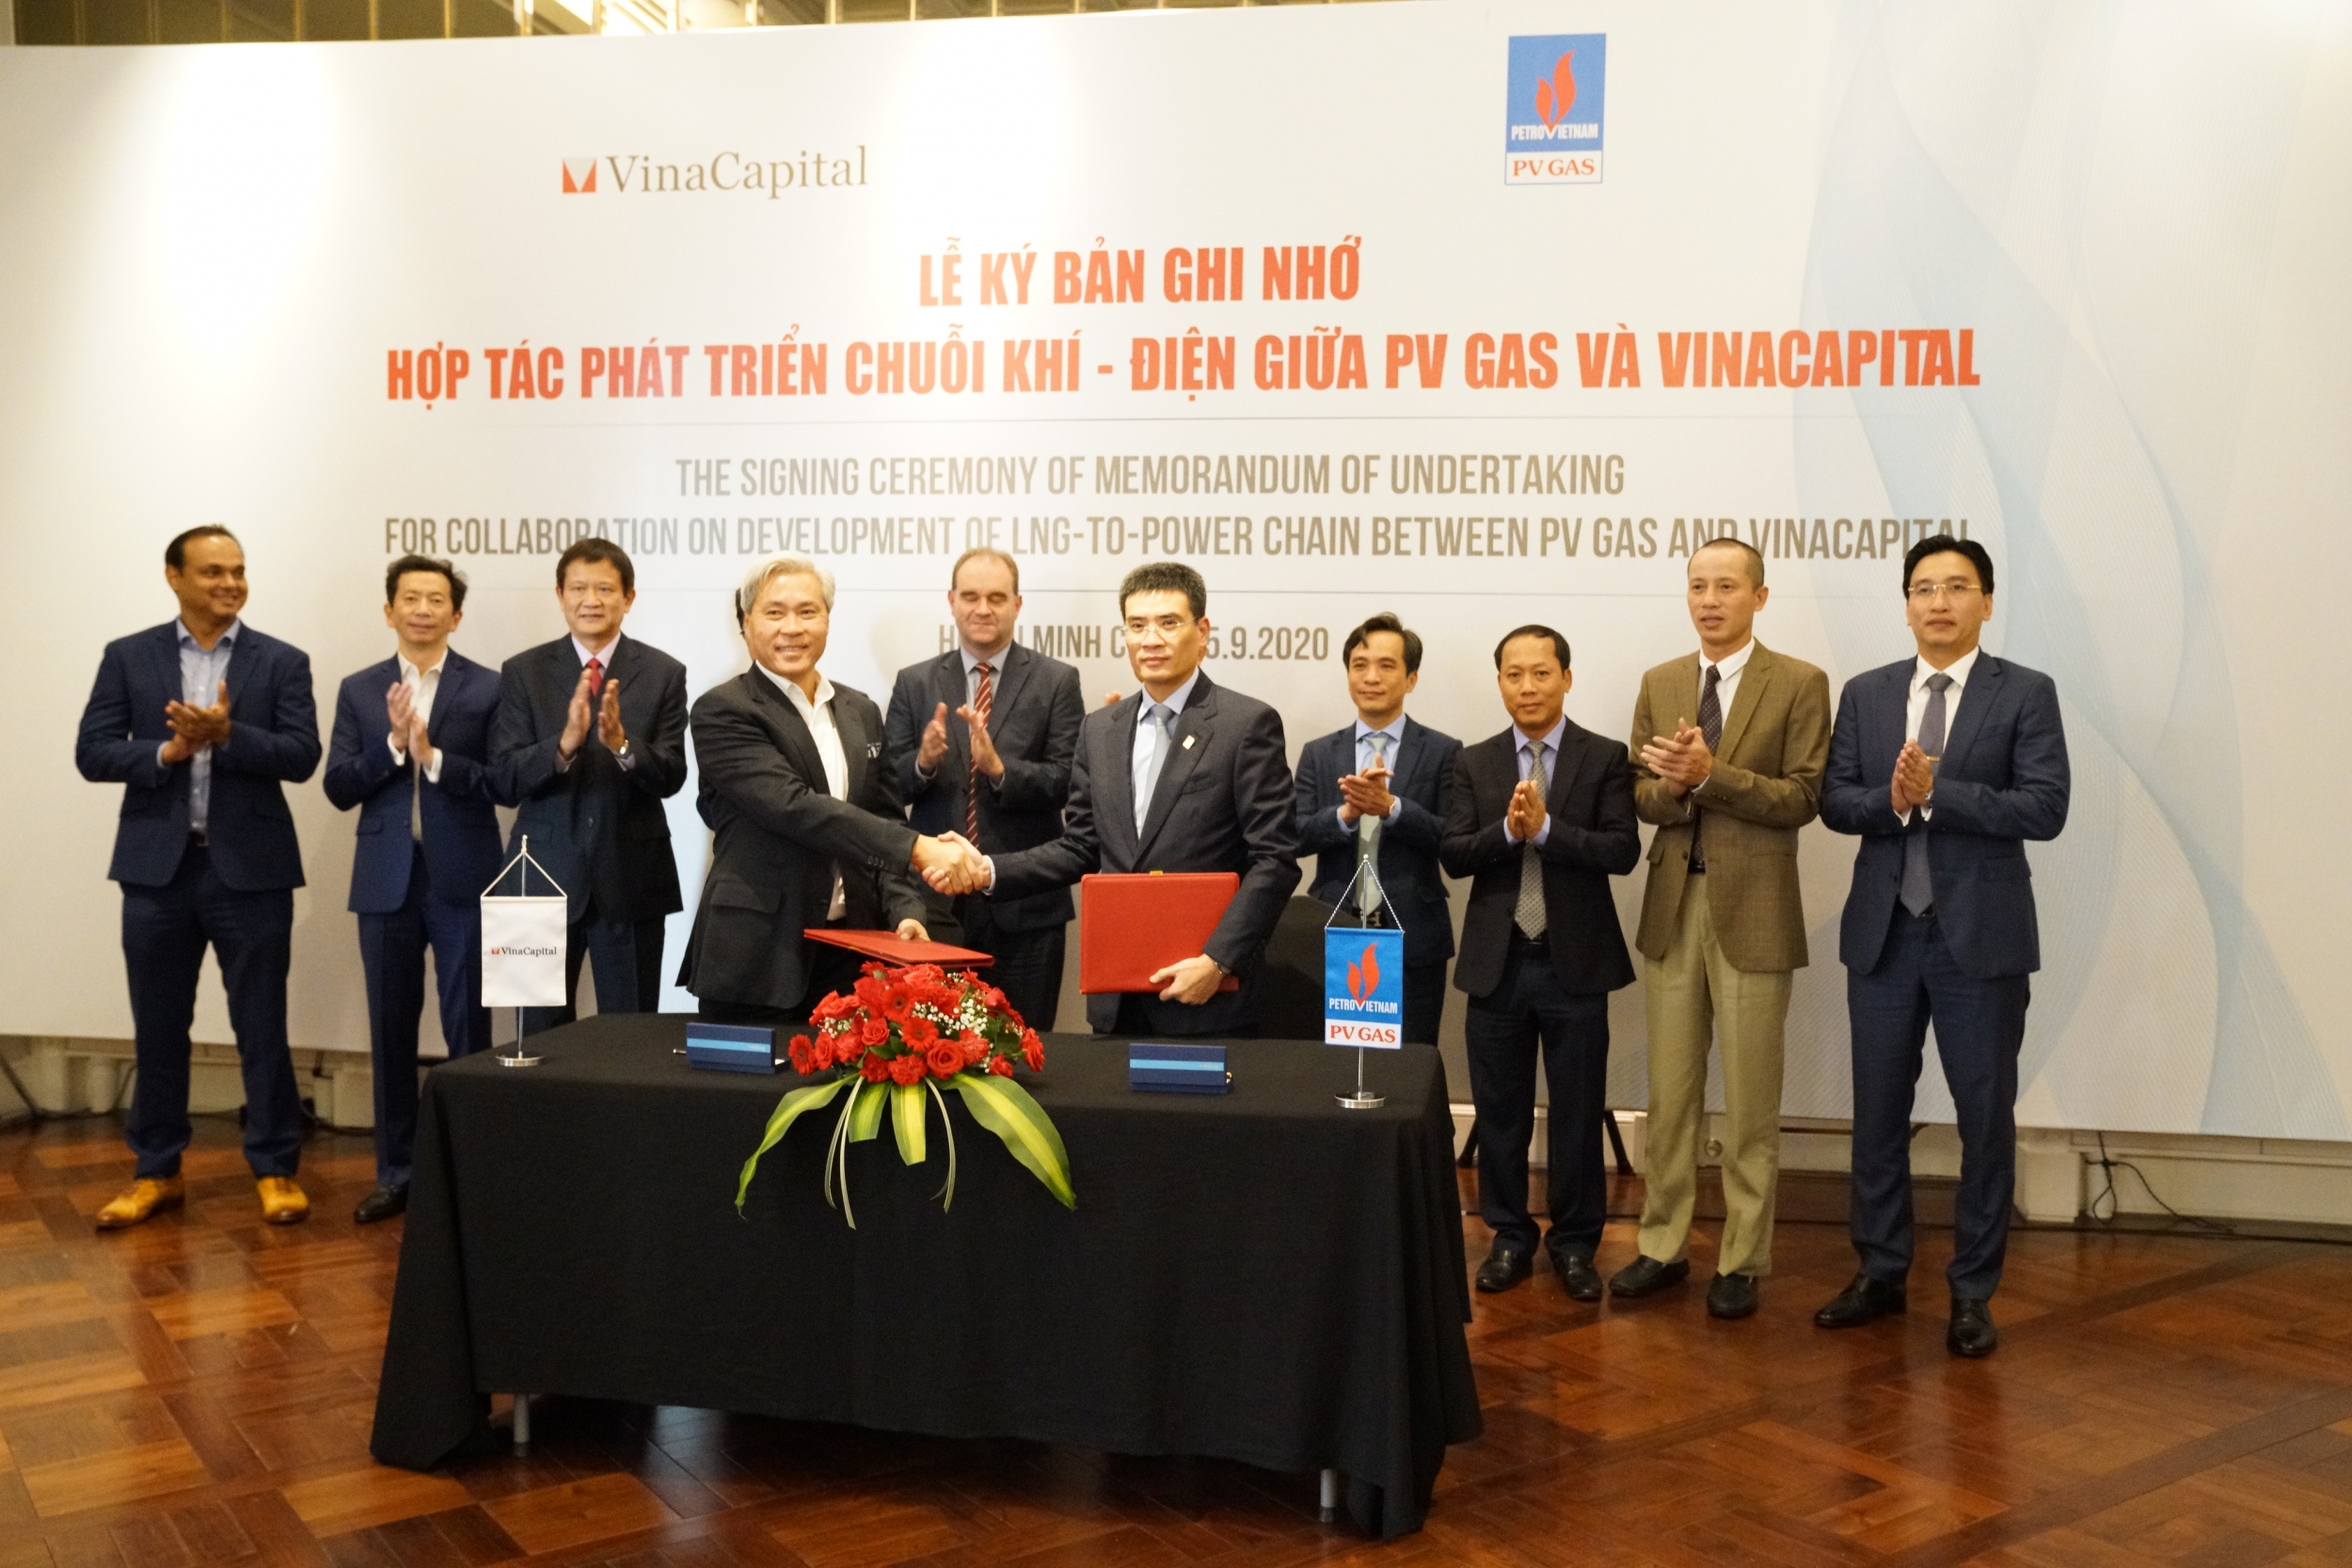 PV GAS và VinaCapital ký ghi nhớ về hợp tác phát triển chuỗi Khí - Điện